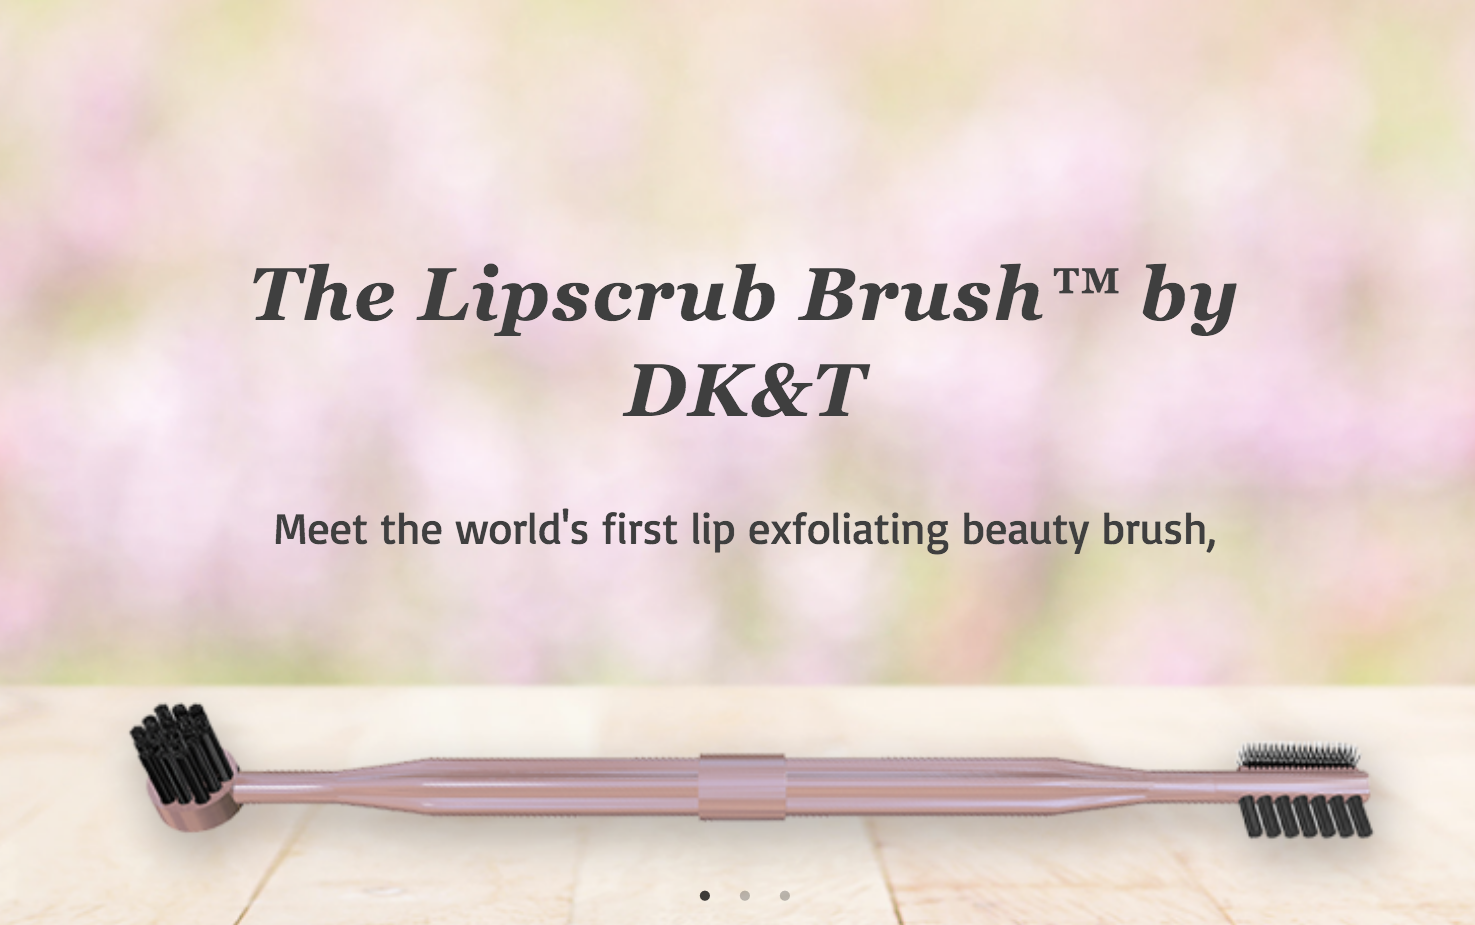 The lipscrub Brush